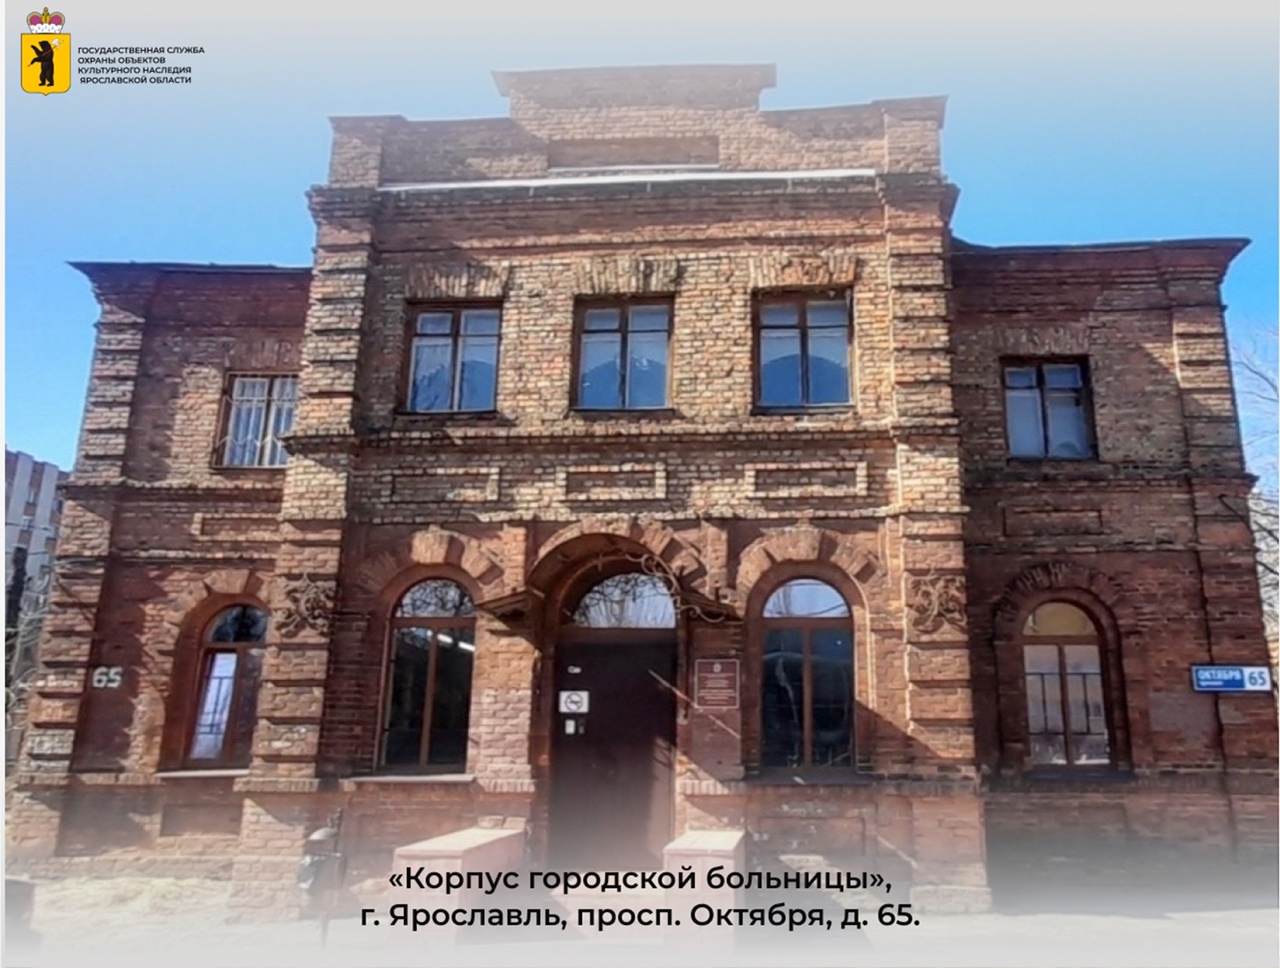 В Ярославле здание больницы признали памятником культурного наследия